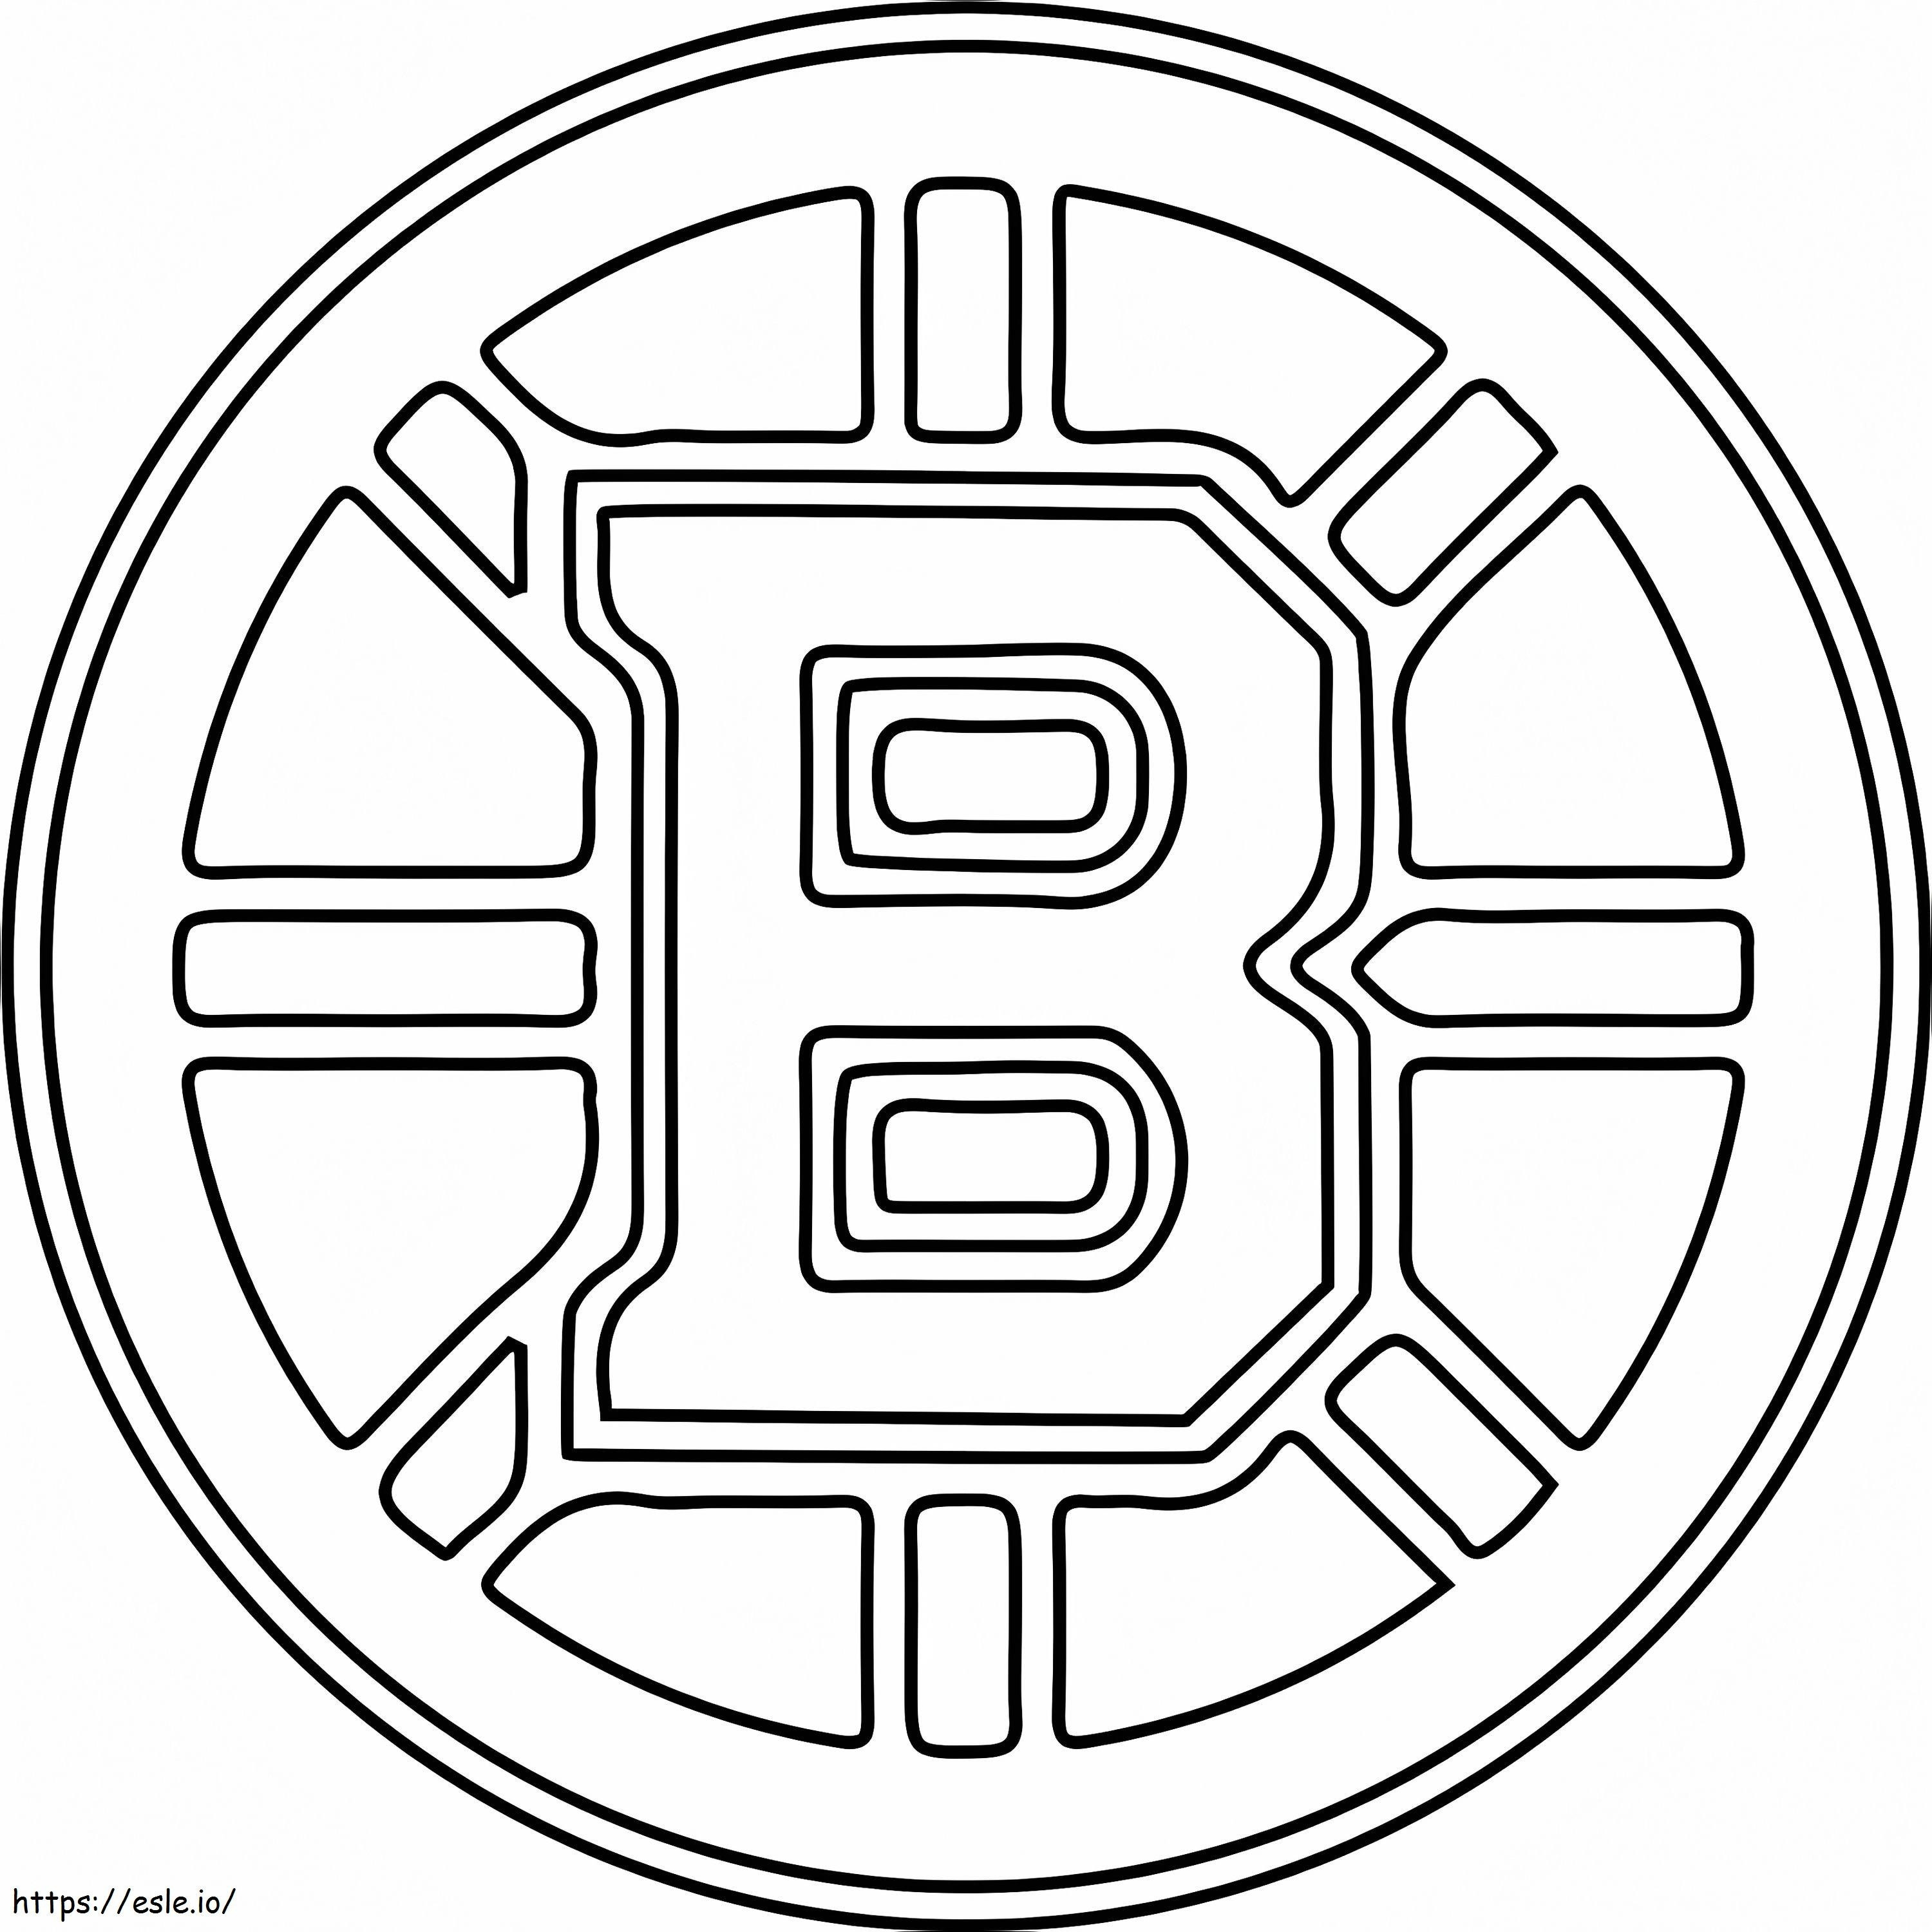 Logotipo de los Bruins de Boston para colorear